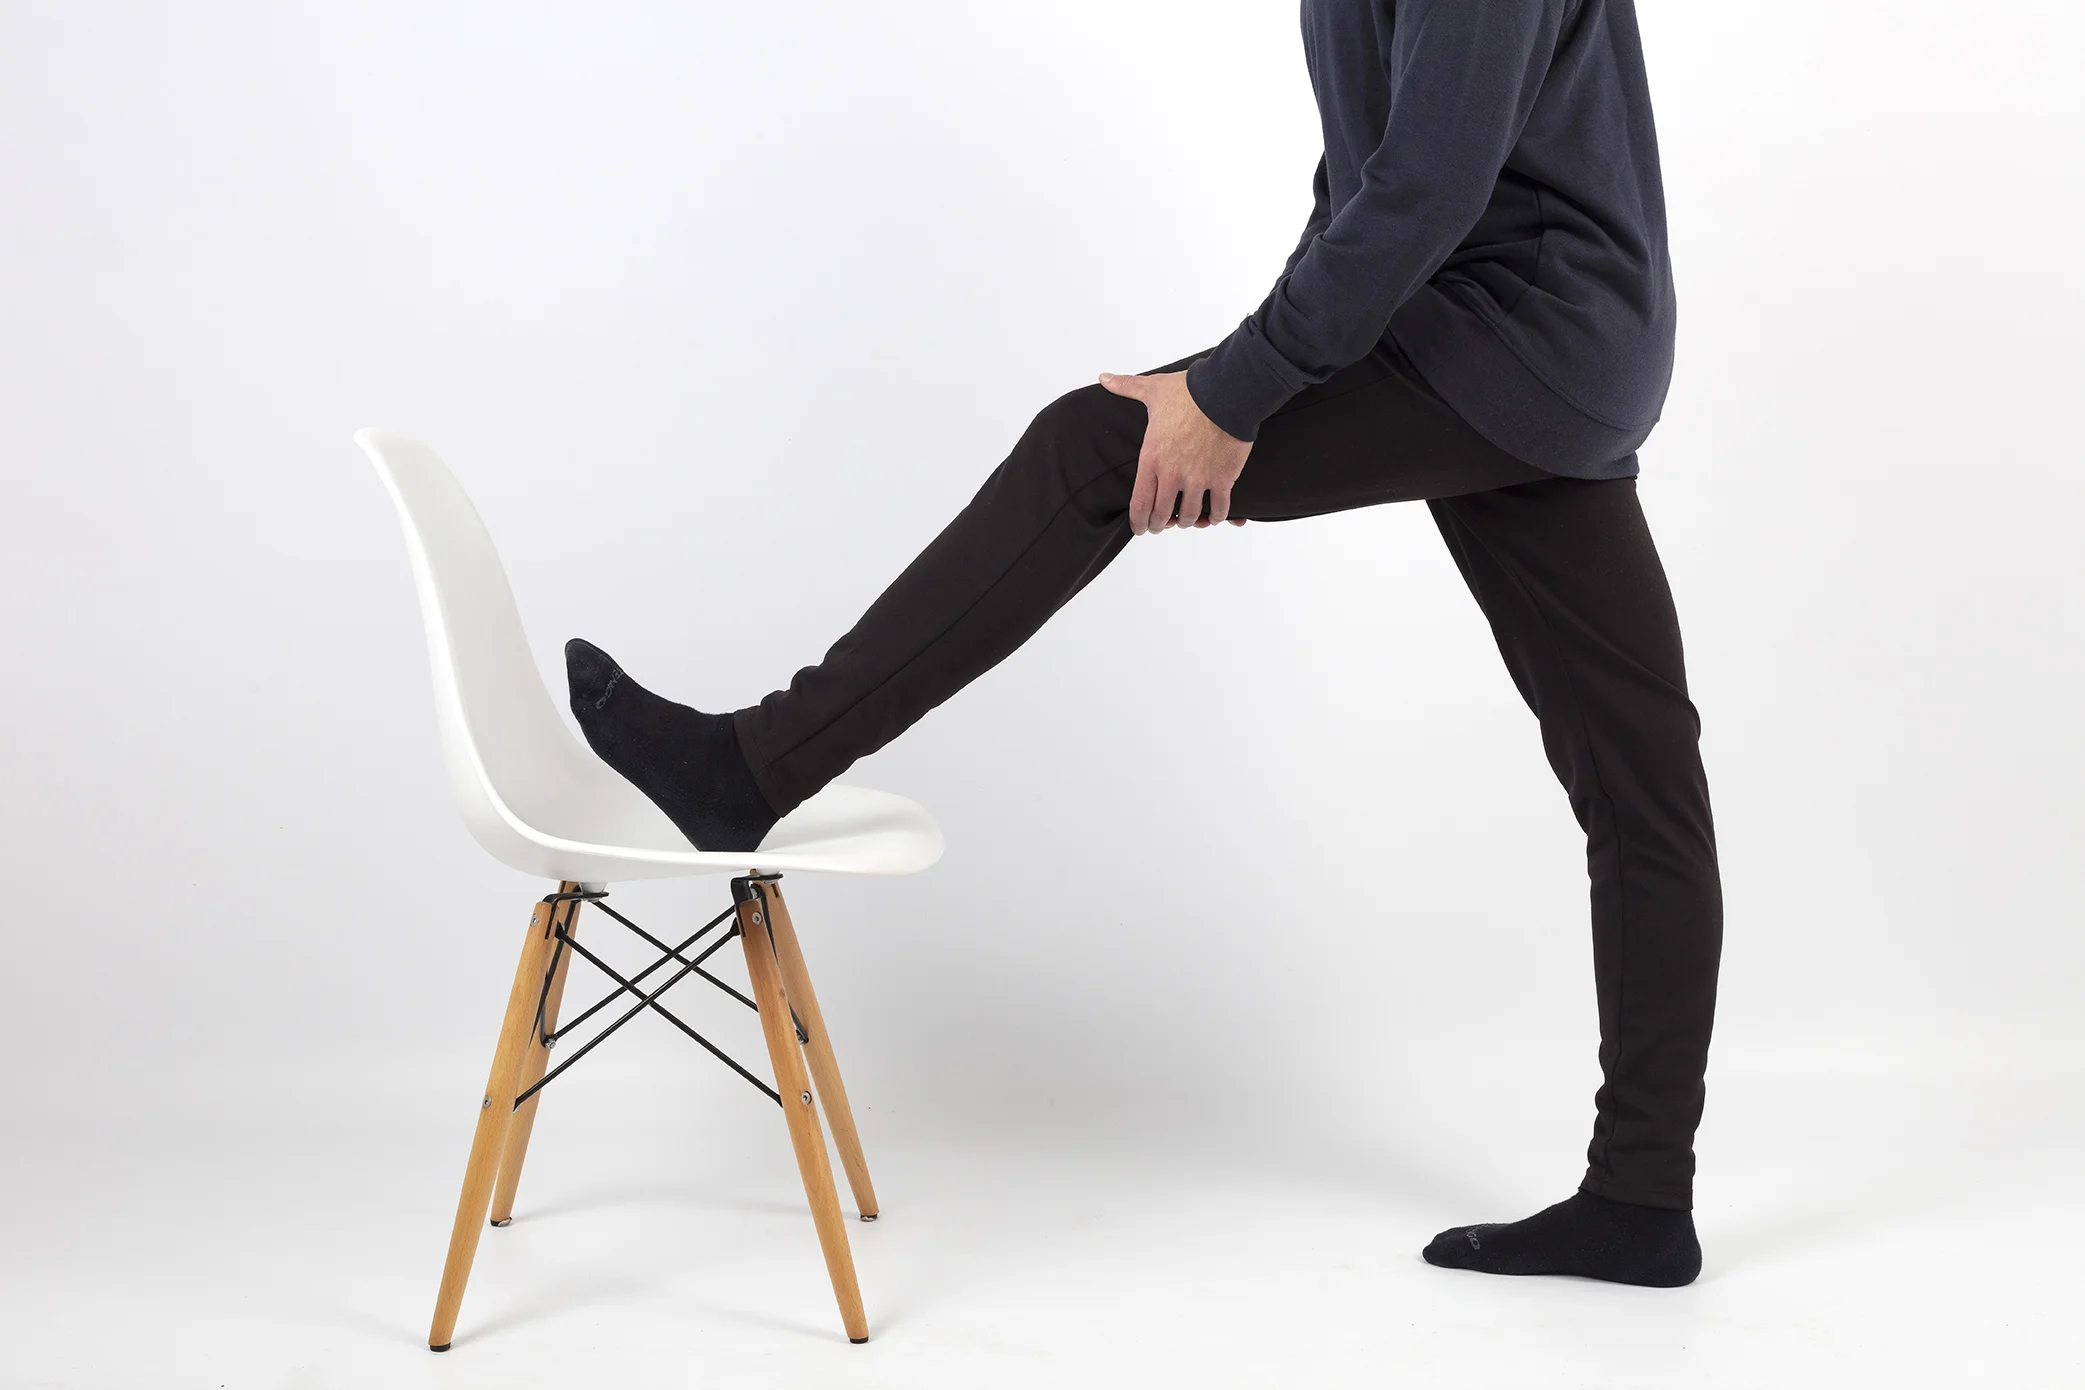 Fisioterapeuta realiza un estiramiento de la musculatura posterior de la pierna. Tiene el pie apoyado sobre una silla de color blanco que se encuentra en su casa.